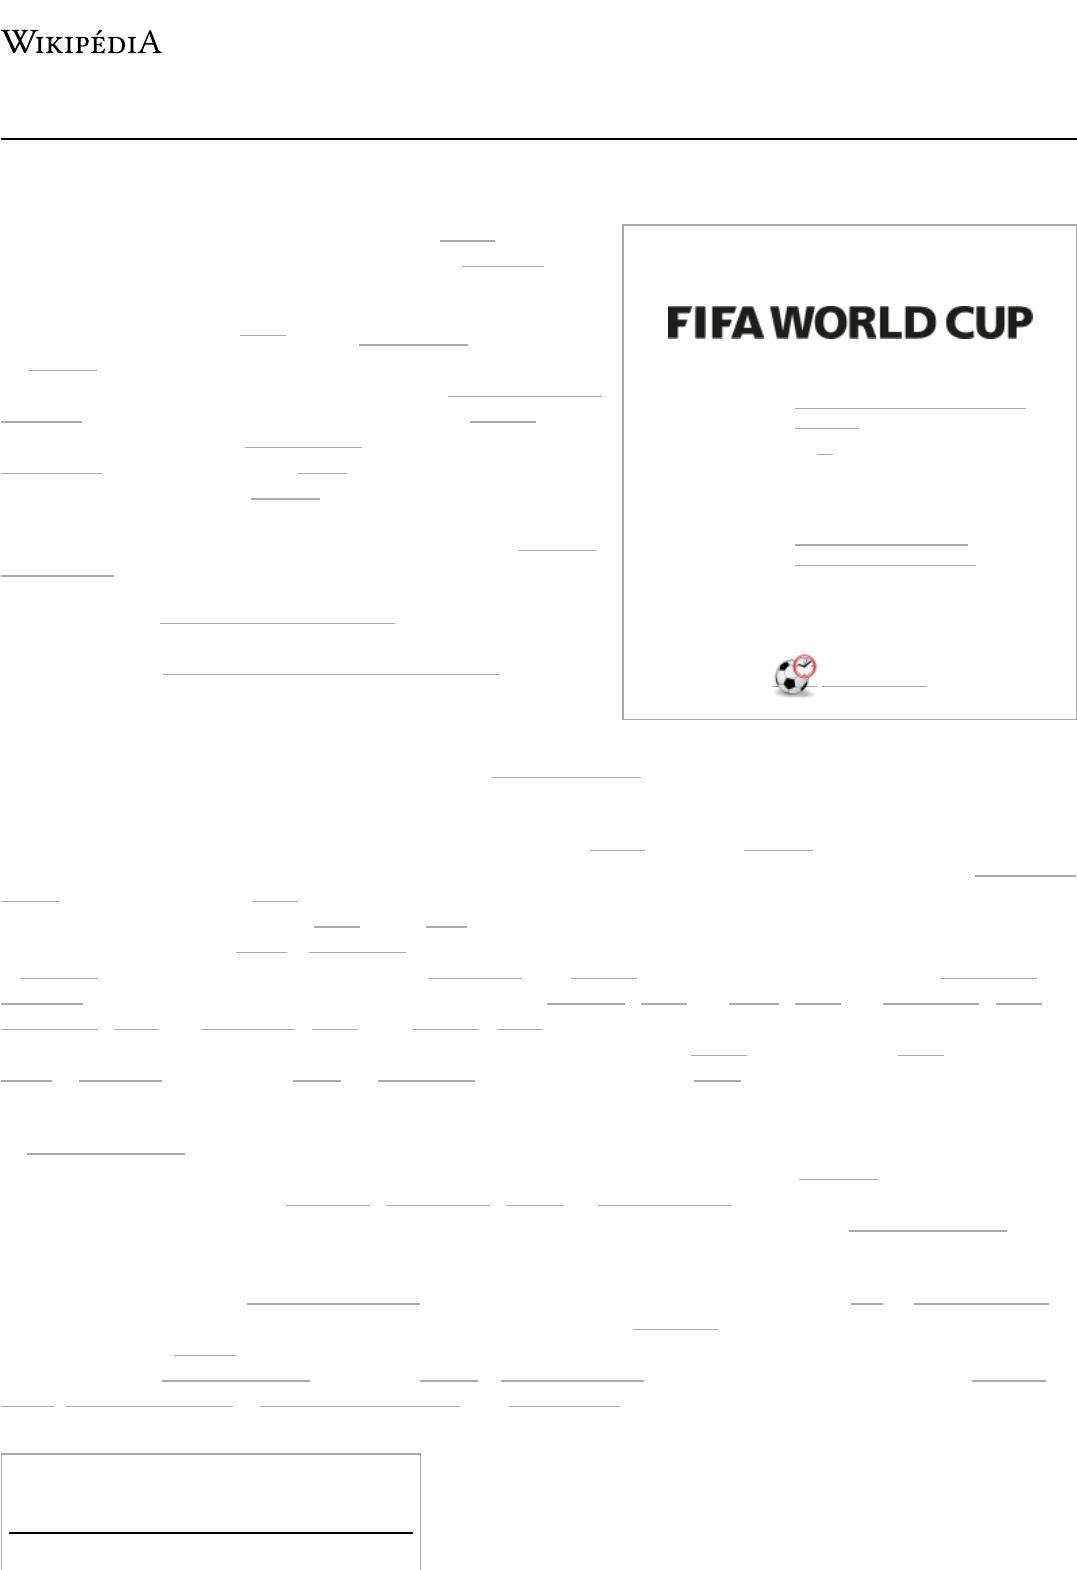 Copa do Mundo FIFA de 2018 – Grupo E – Wikipédia, a enciclopédia livre